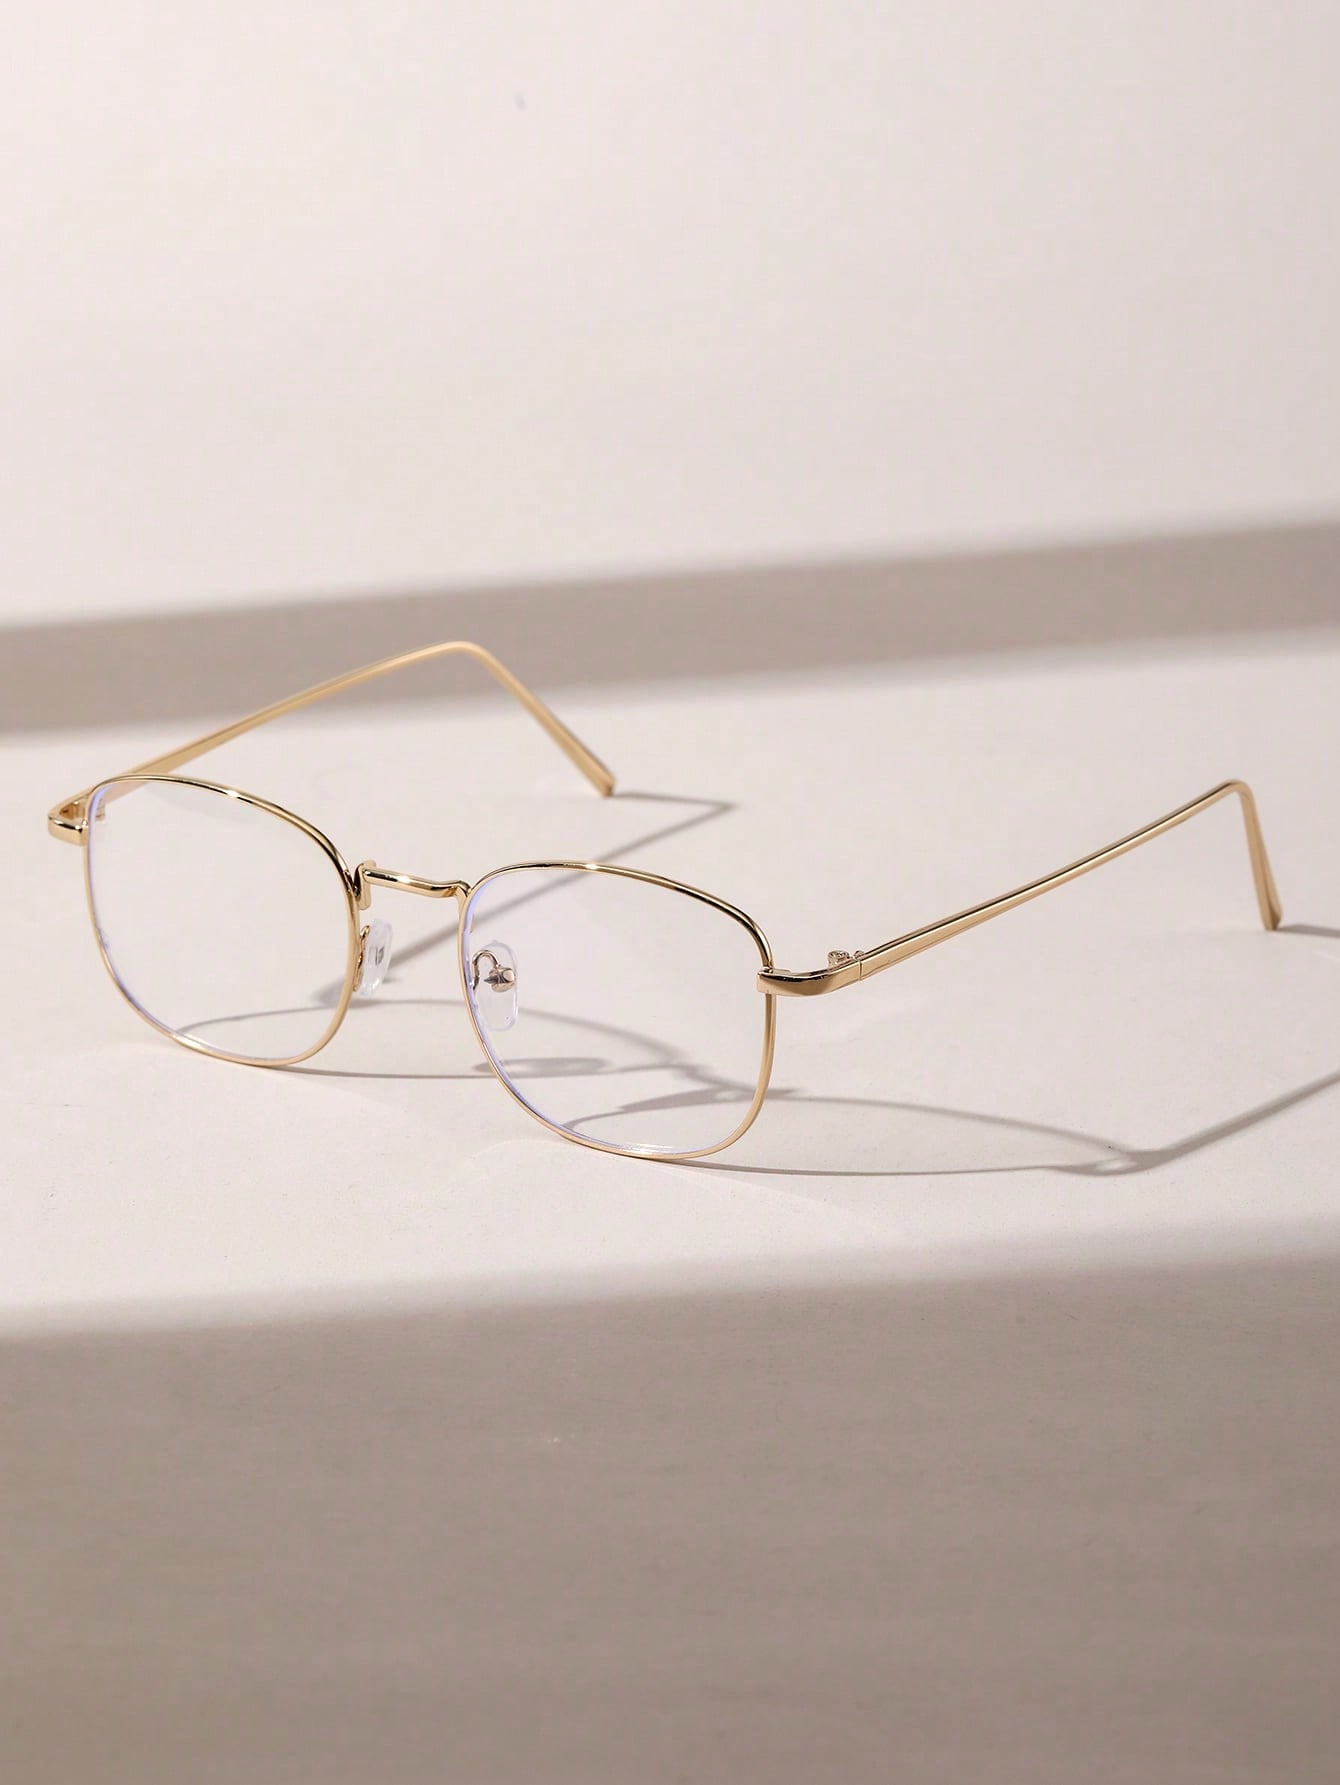 1 шт. женские геометрические медные оправы прозрачные 9768 очки cutler and gross